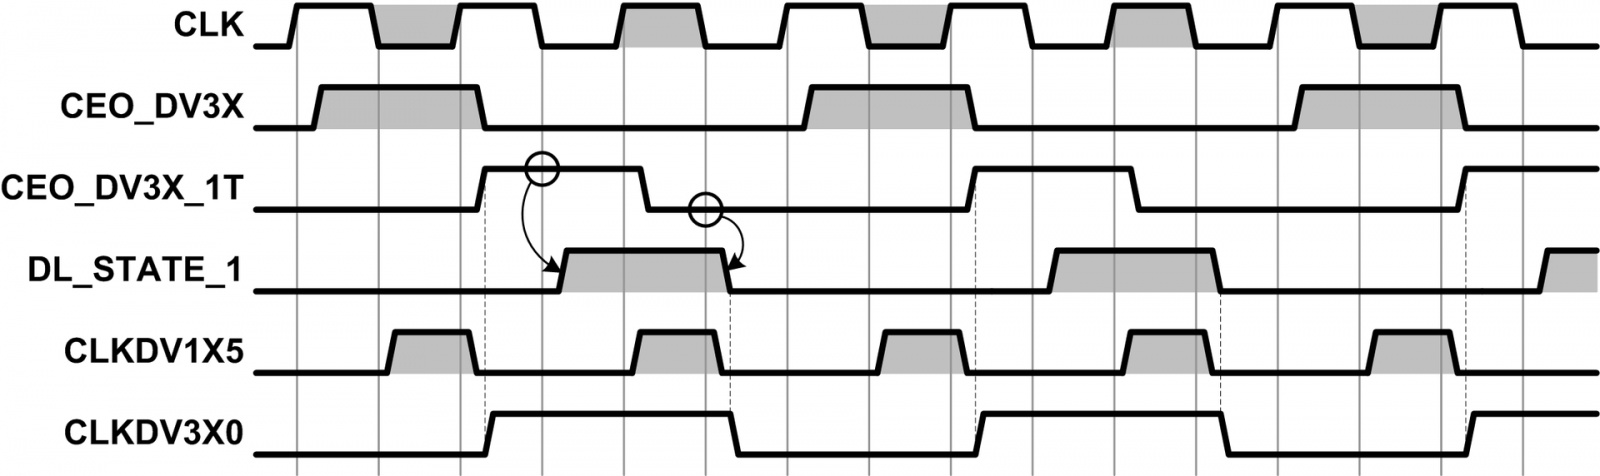 Организация делителя частоты с дробным коэффициентом деления в объёме ПЛИС - 3